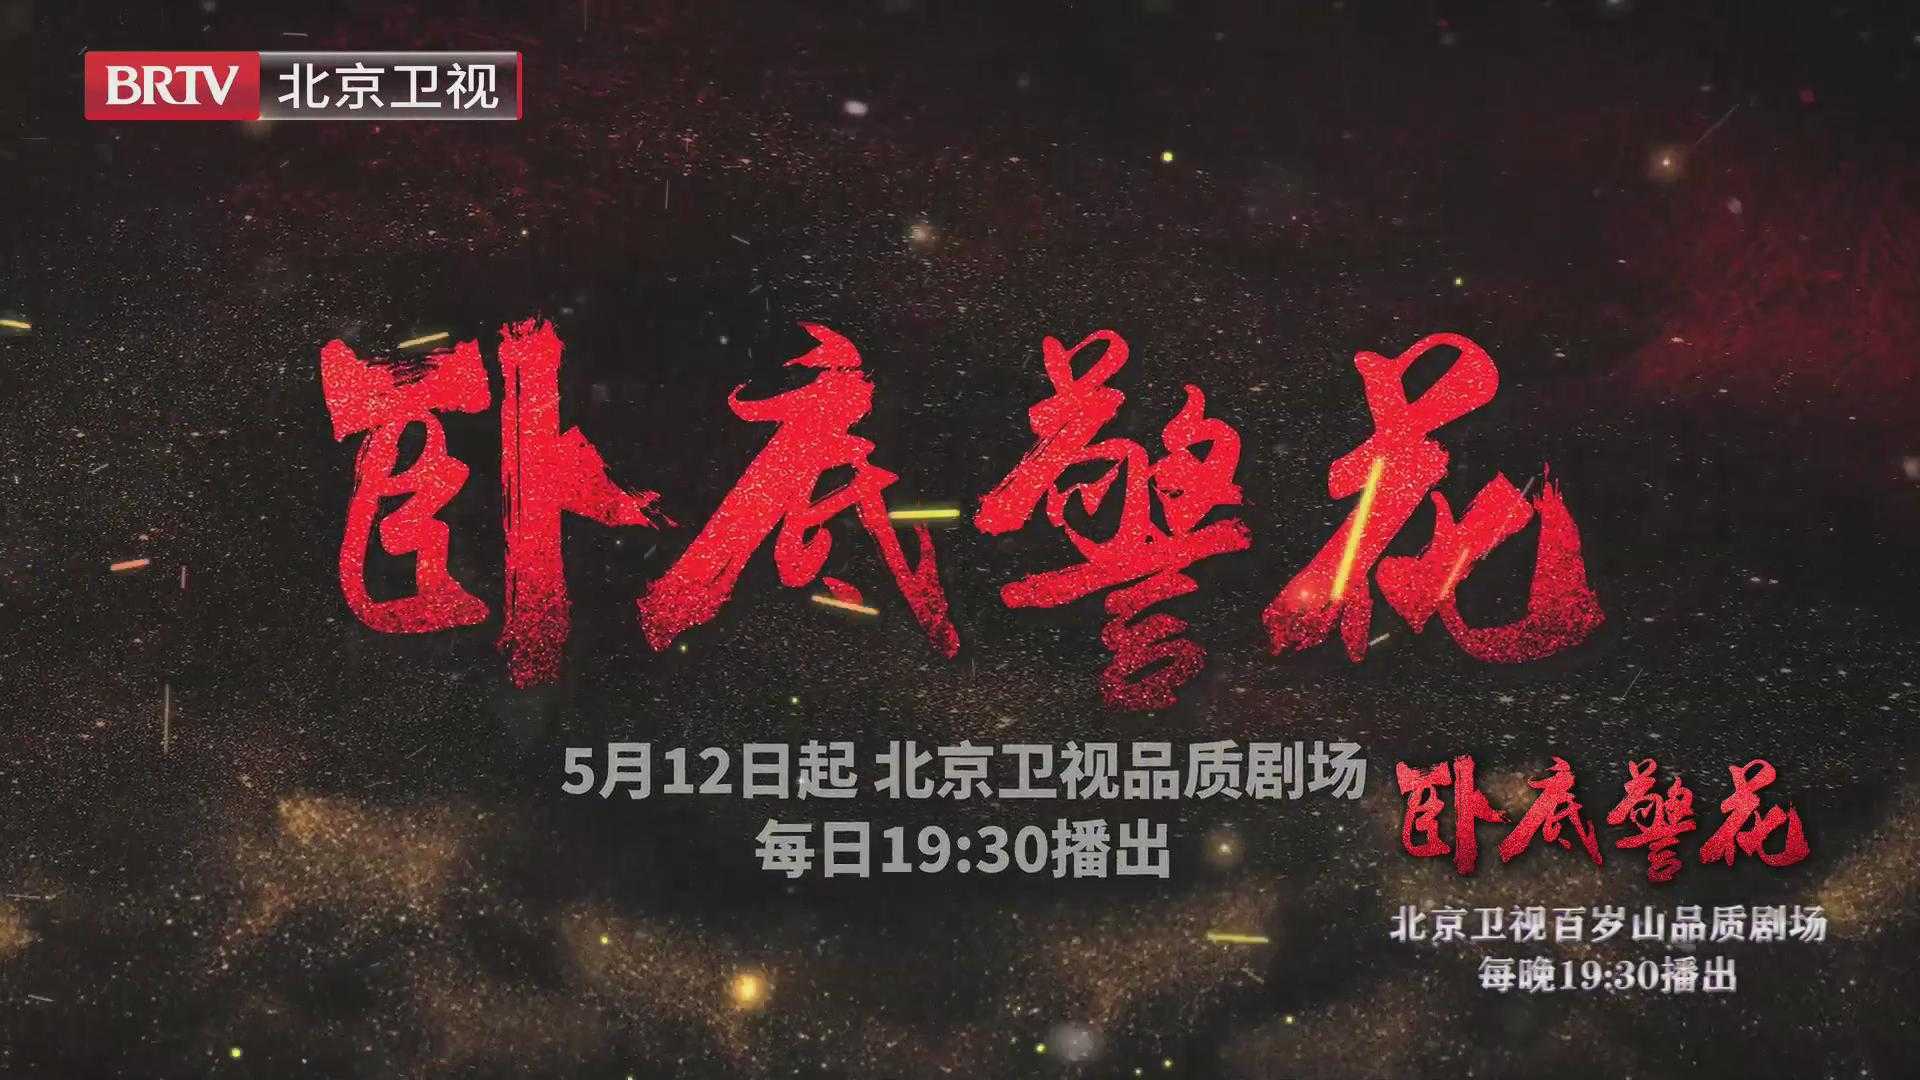 《卧底警花》将于5月12日起北京卫视每日1930播出